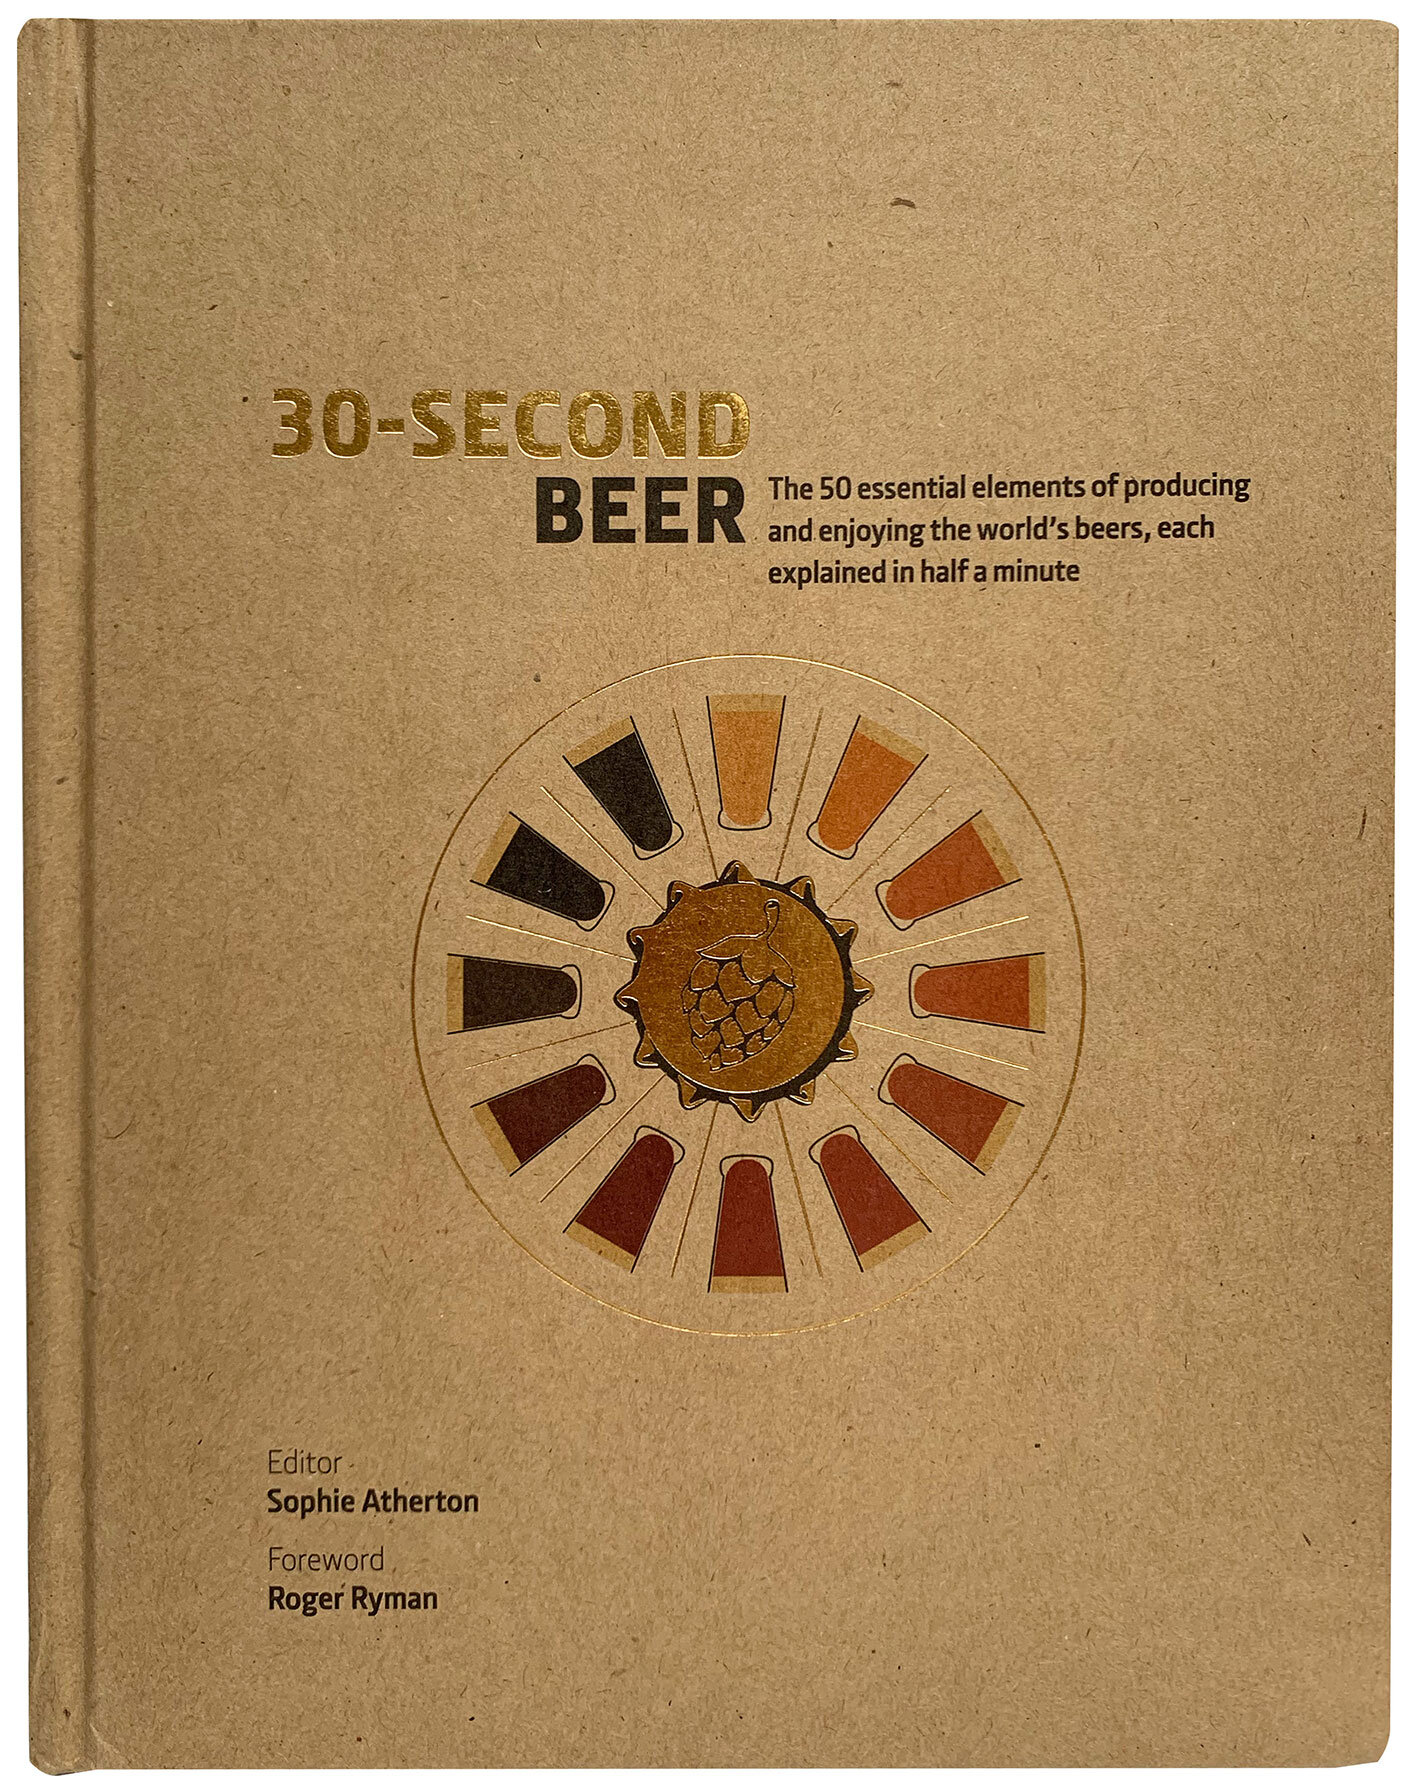 30-Second Beer